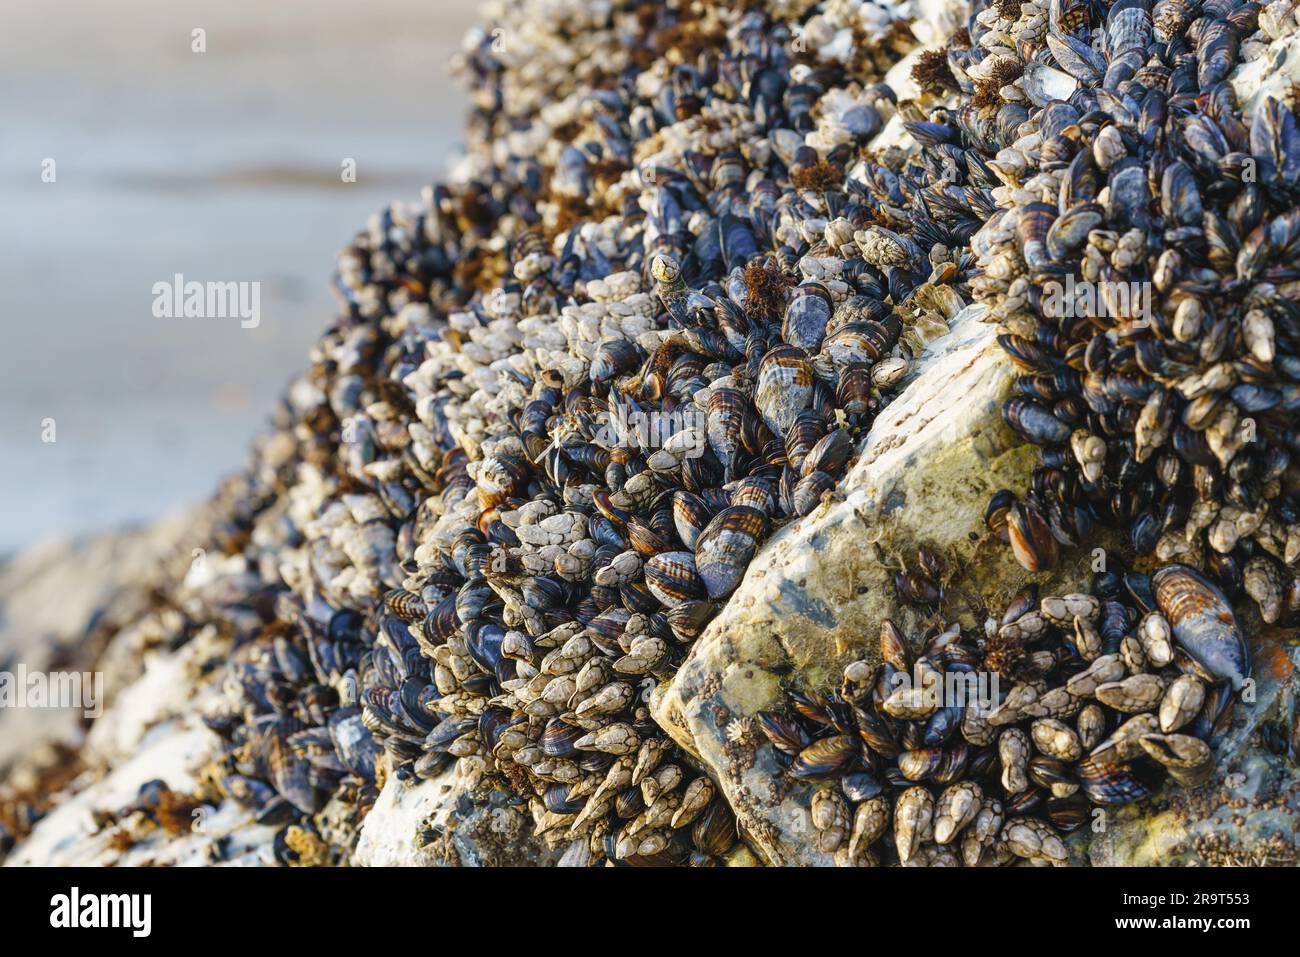 Gänse, Stalking oder Schwanenhals sind am Avila Beach, Kalifornien, an Felsen angebrachte Krebstiere, die sich von den Fischen ernähren Stockfoto